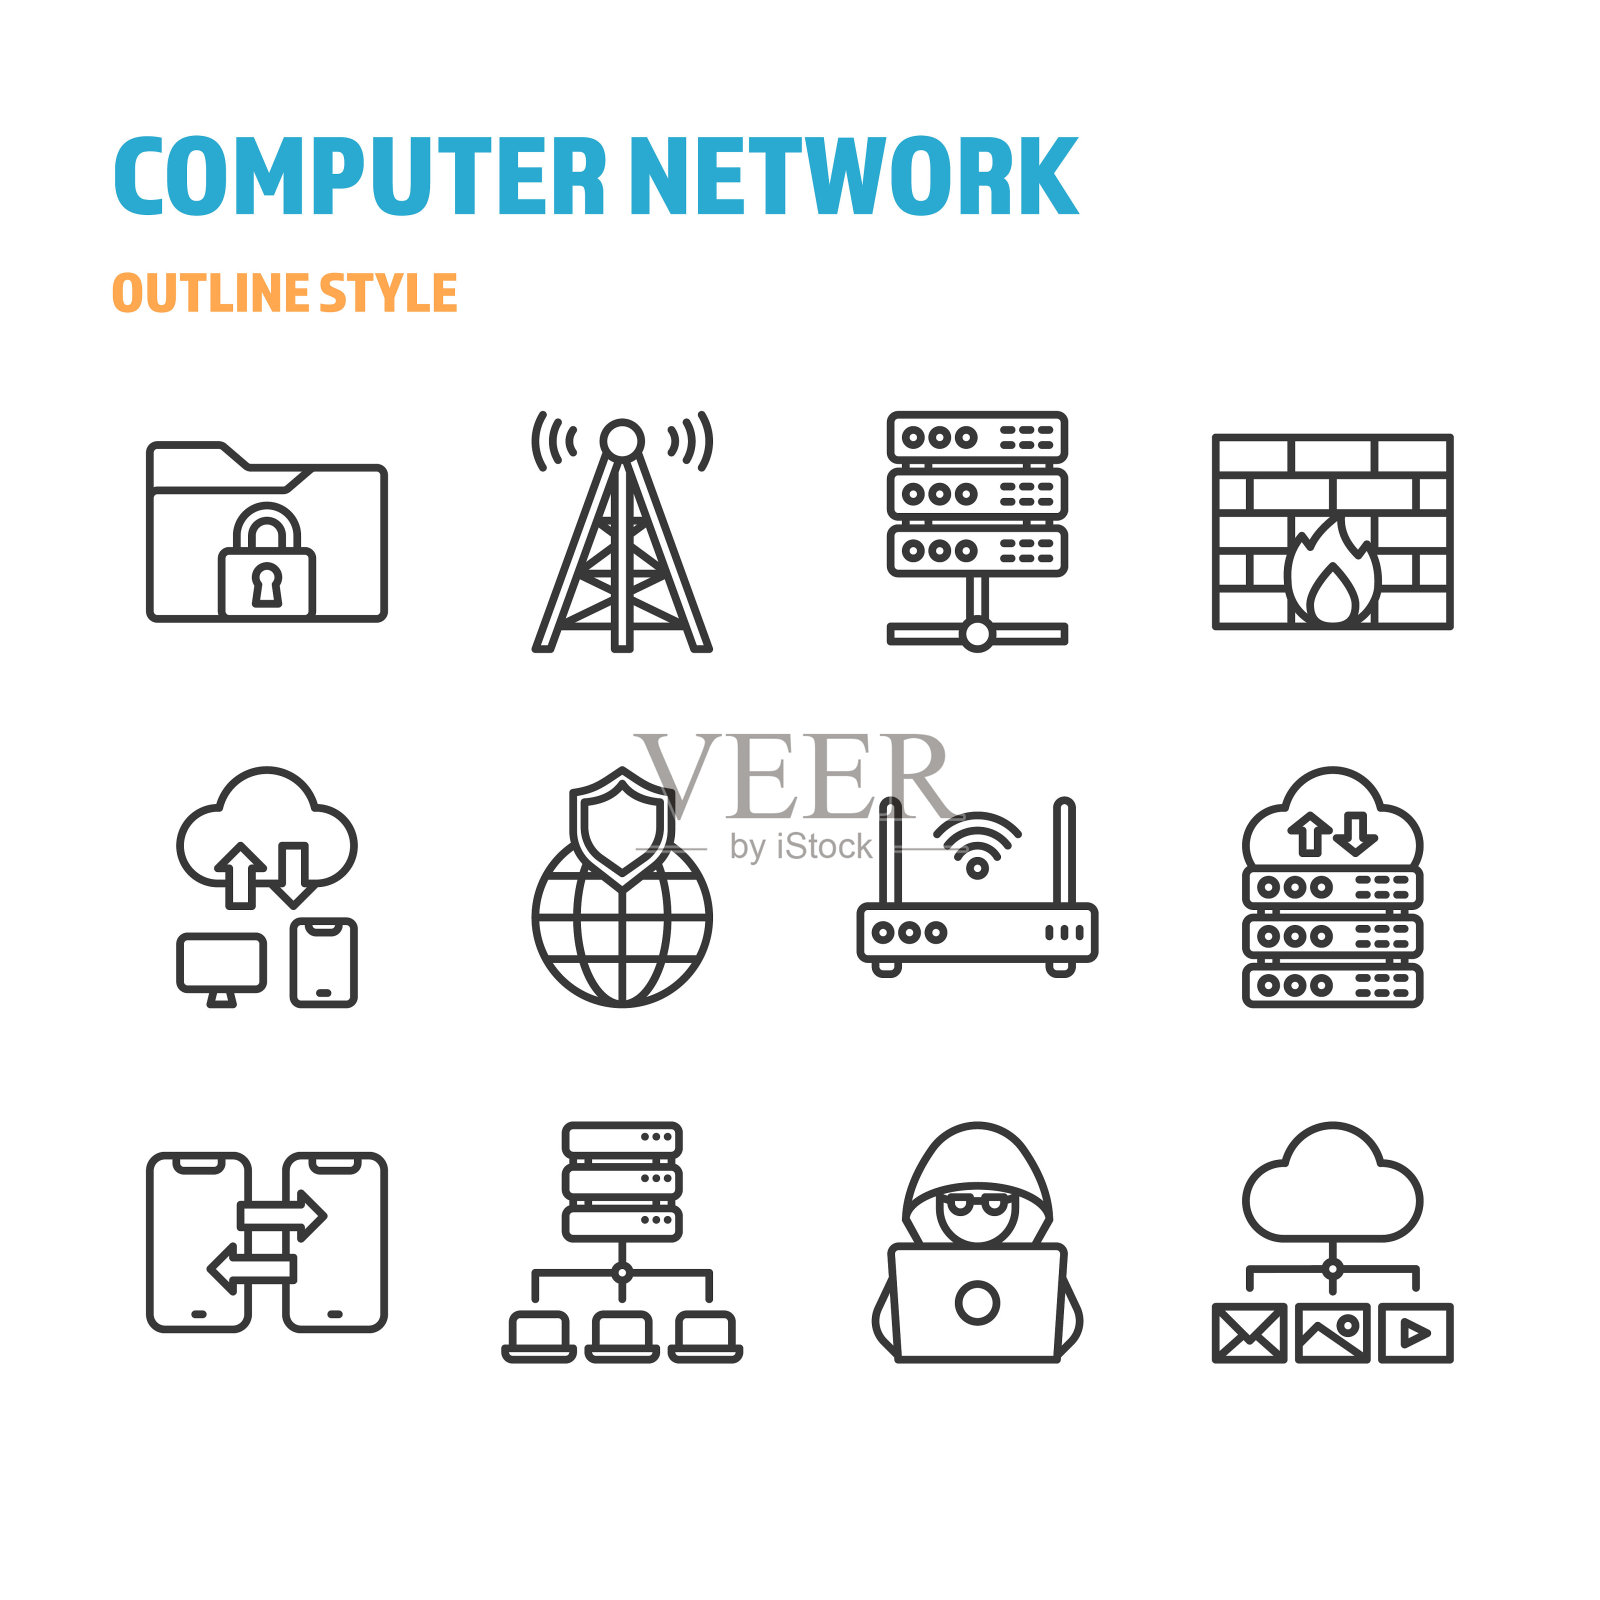 计算机网络的轮廓图标和符号集图标素材